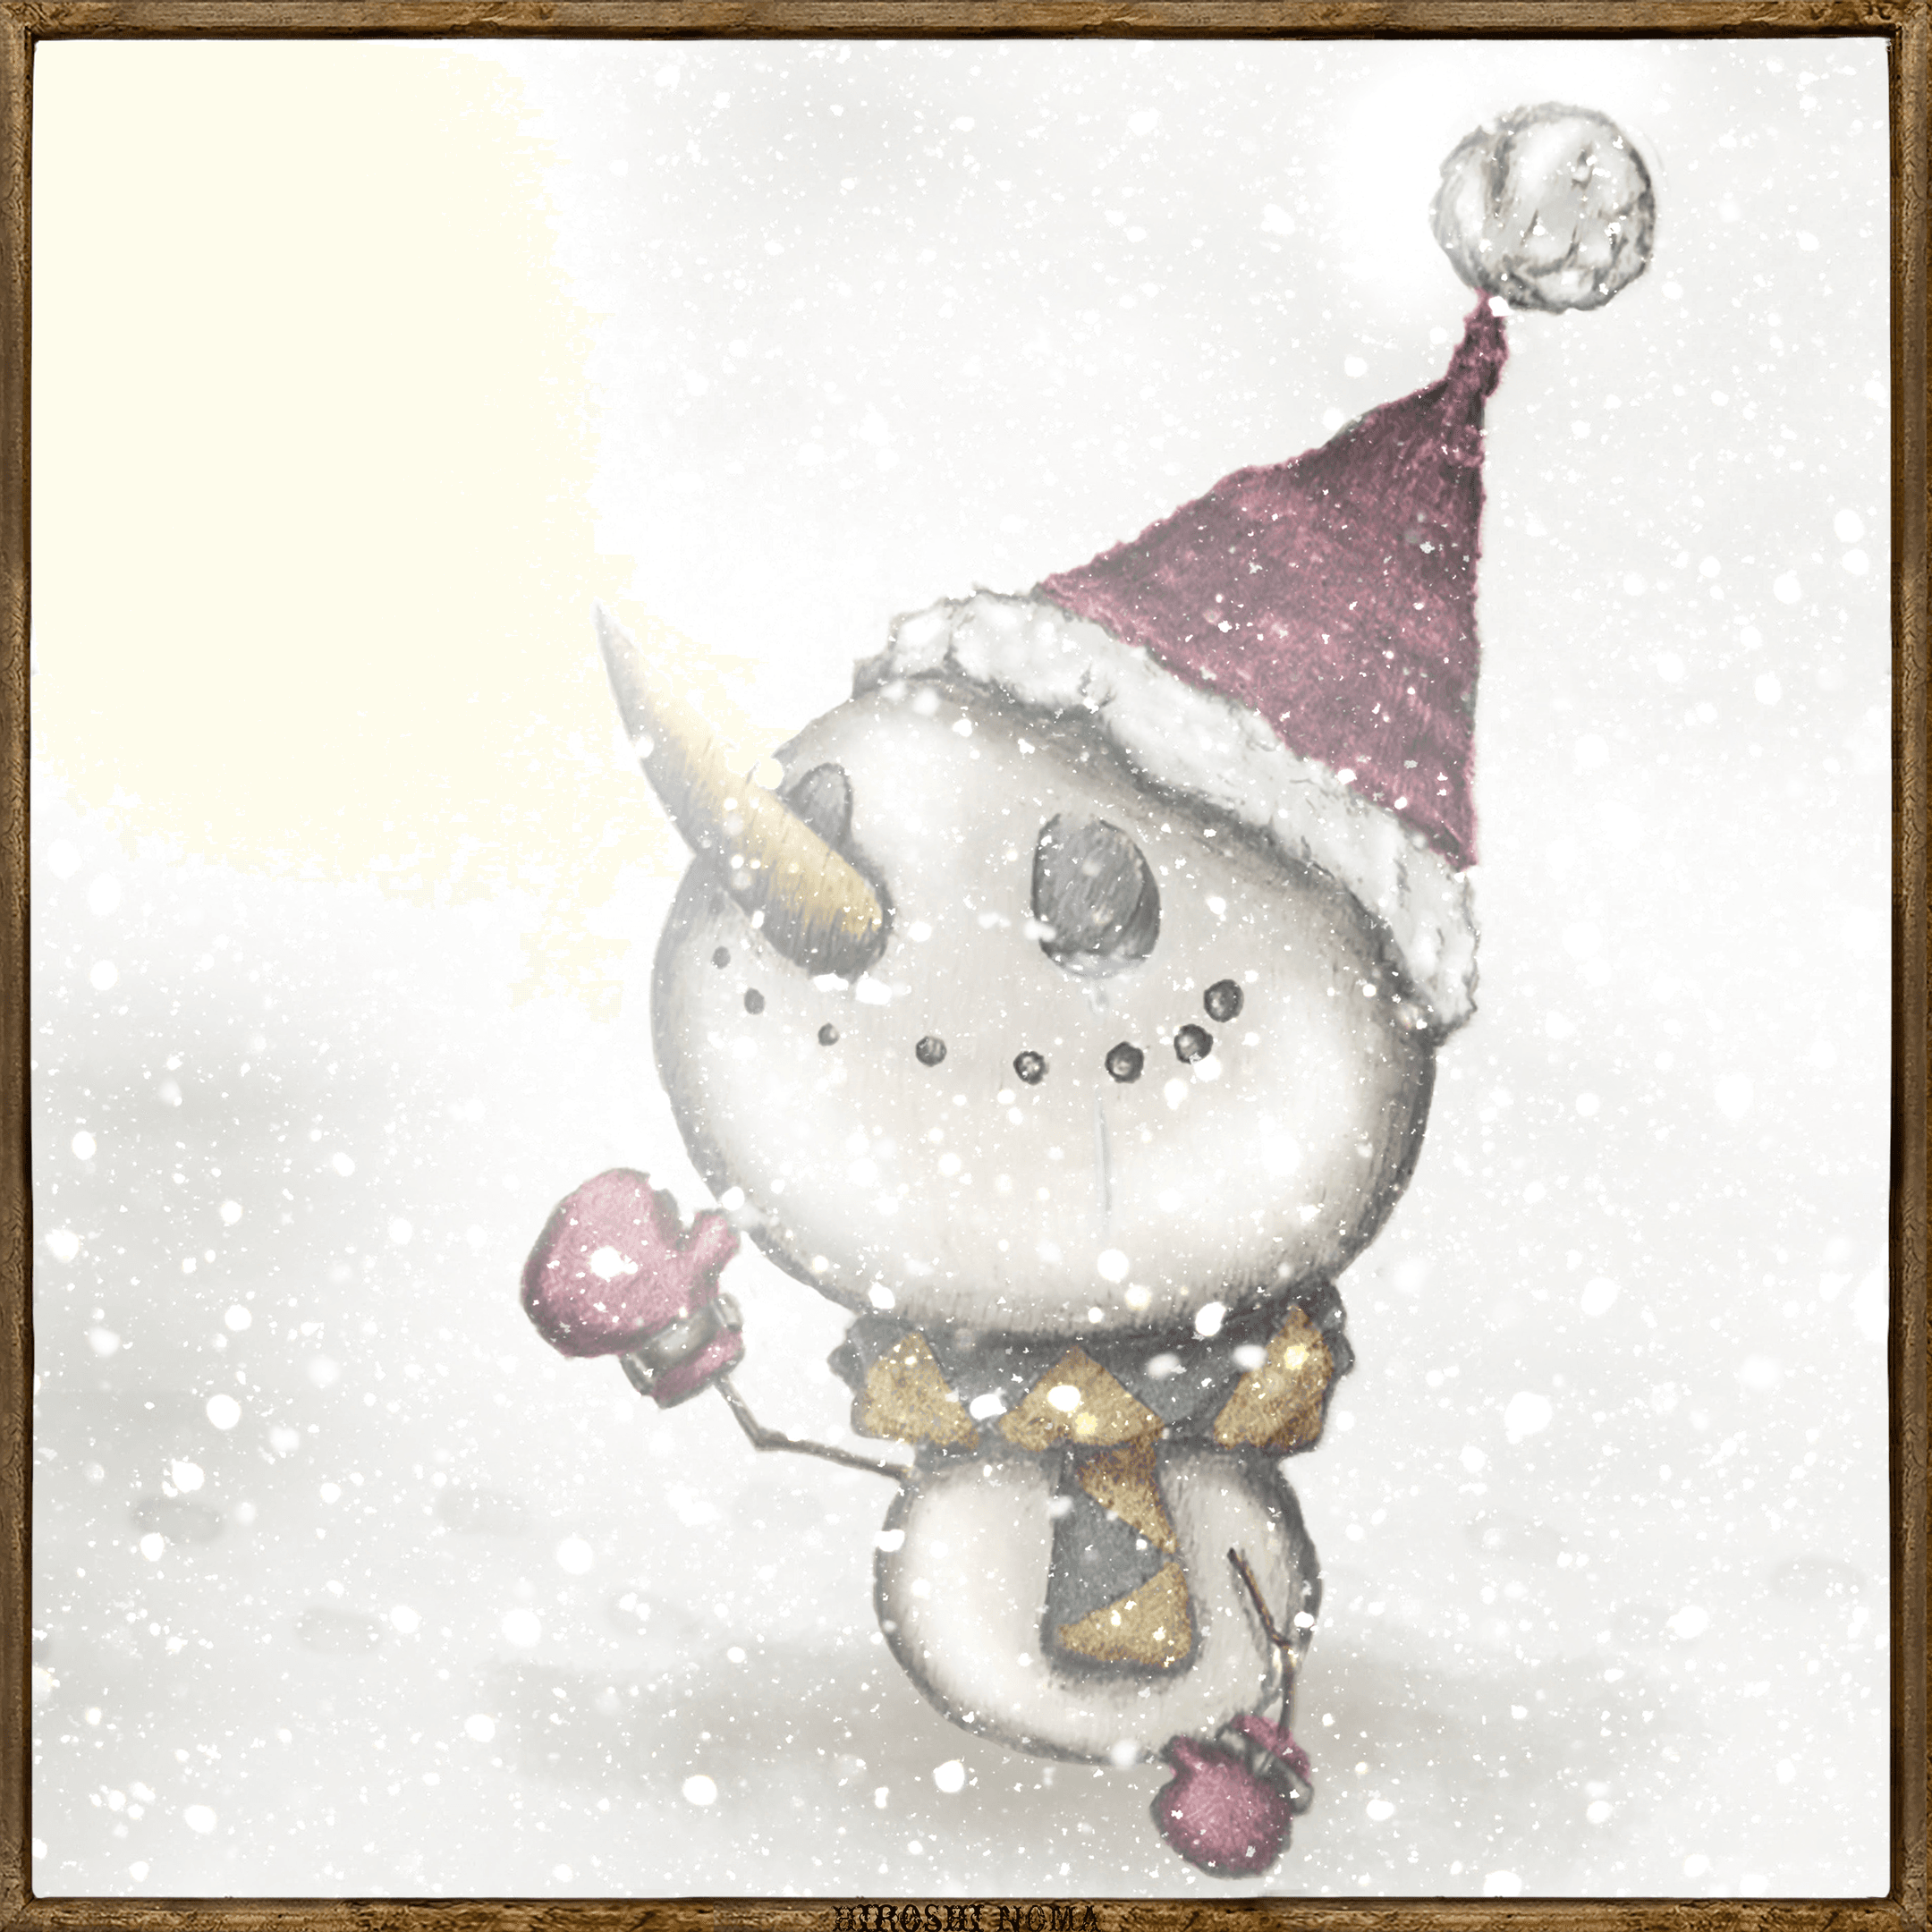 スノーマン-Christmas Toy World-